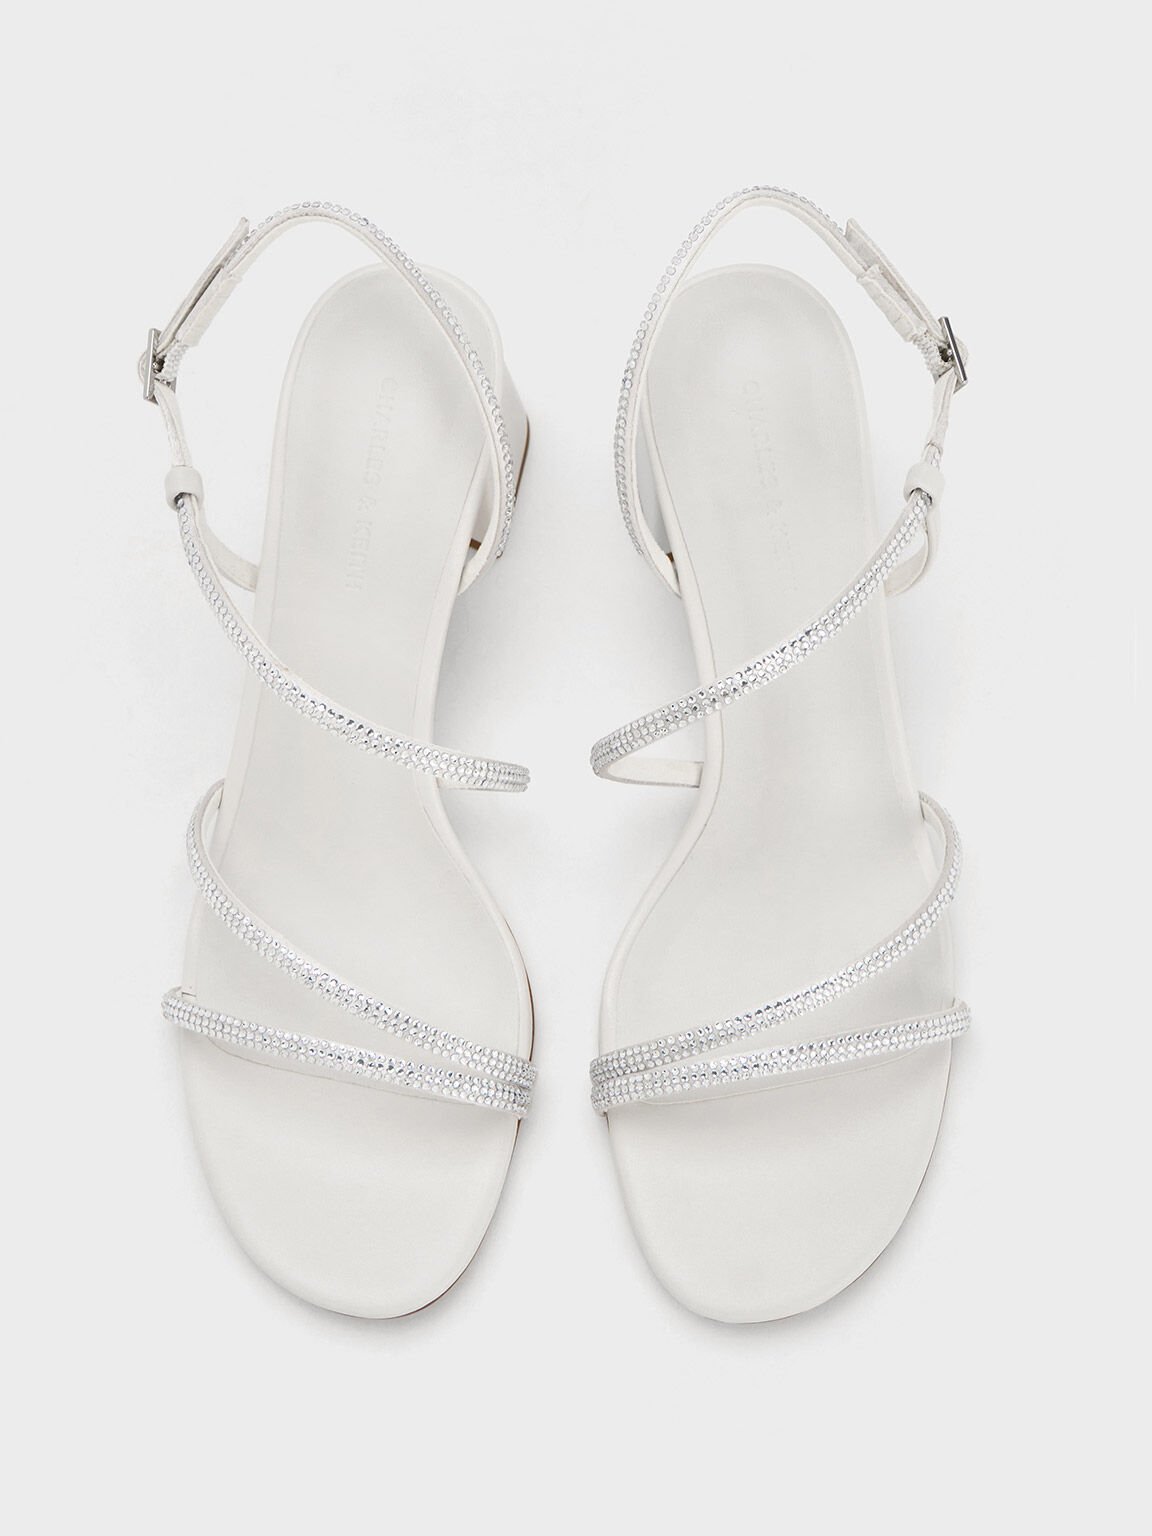 Satin Crystal-Embellished Block-Heel Strappy Sandals, White, hi-res